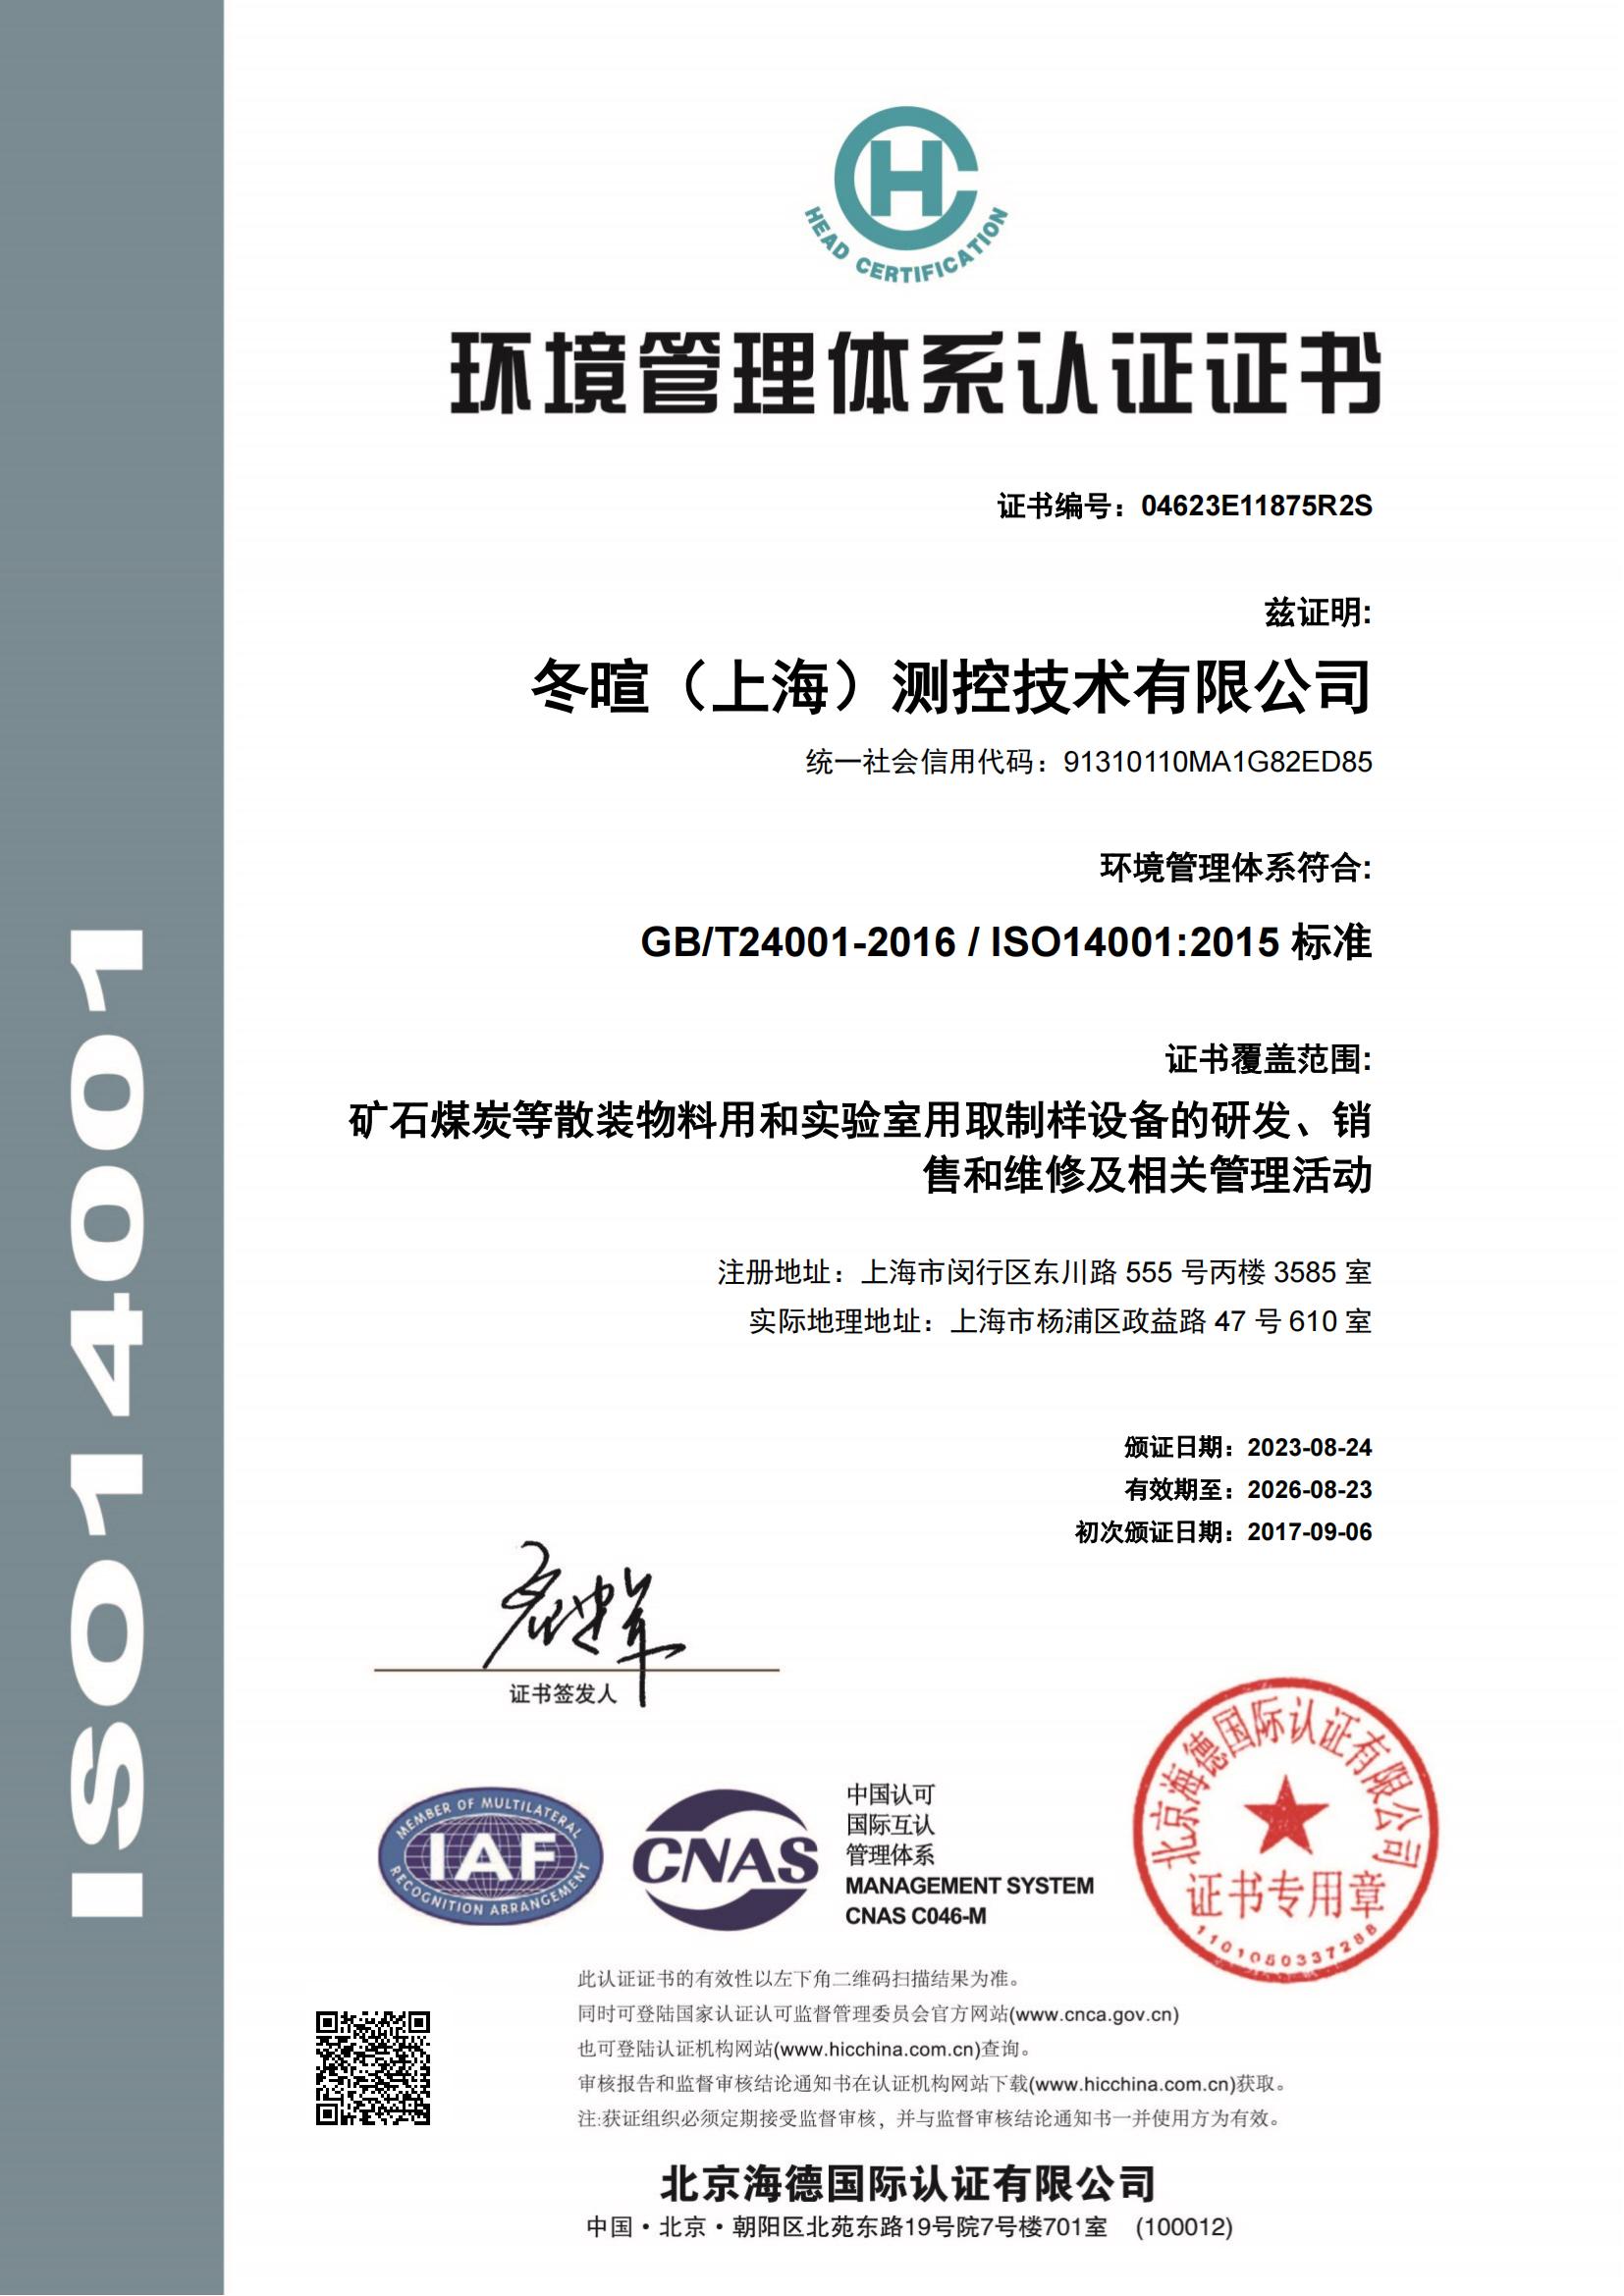 冬暄测控-环境管理体系认证证书--中文